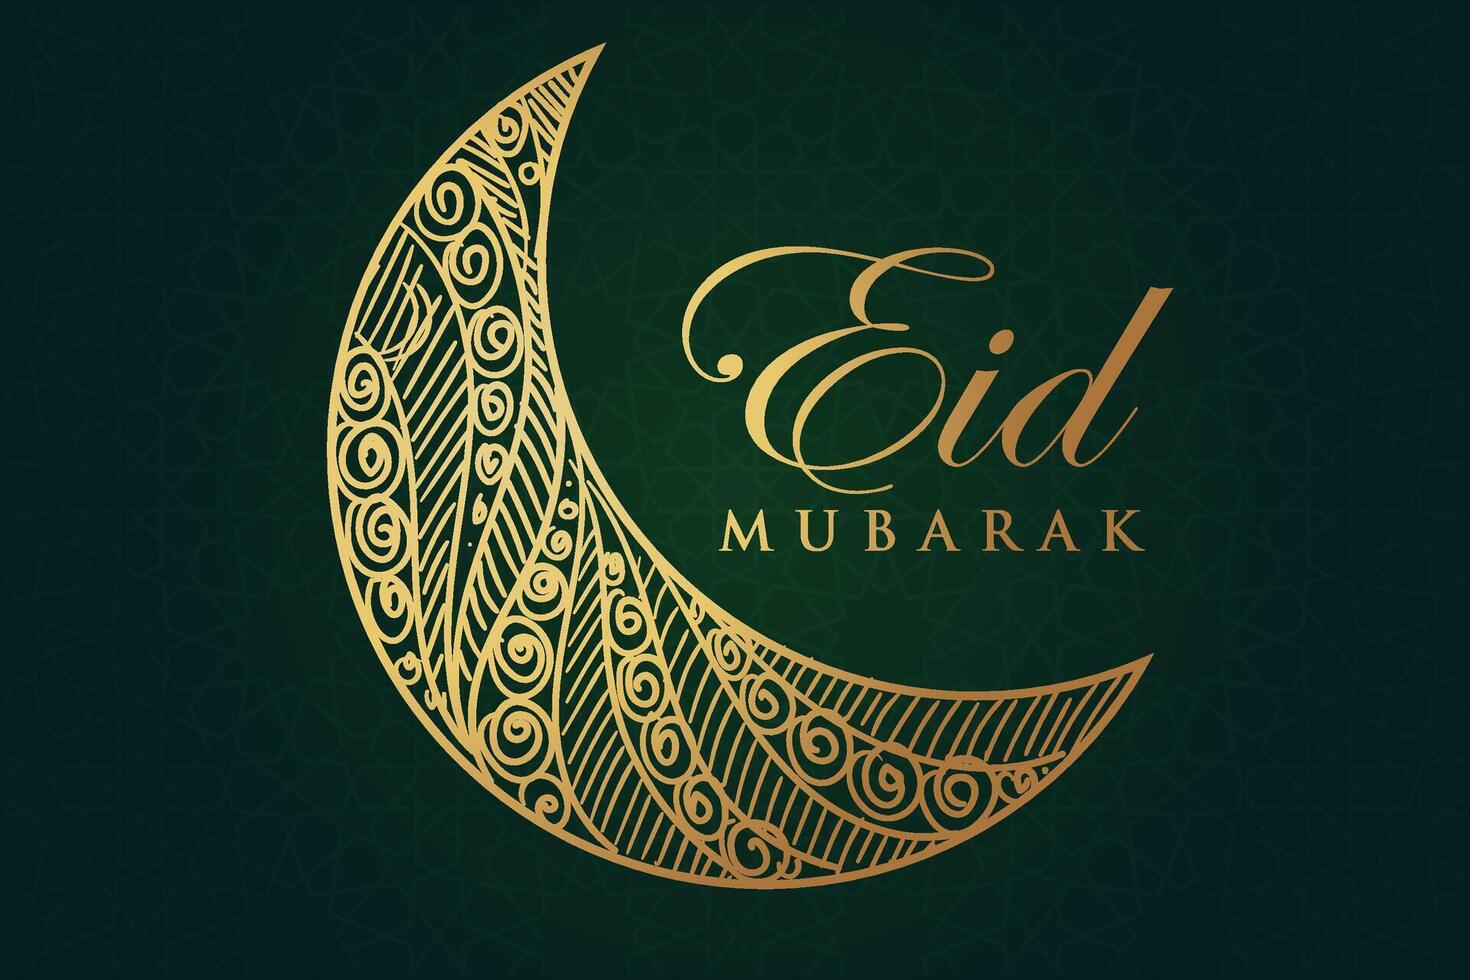 Ramadan, eid al-fitr, islamico calendario sfondo saluto carta con mezzaluna Luna decorazione vettore